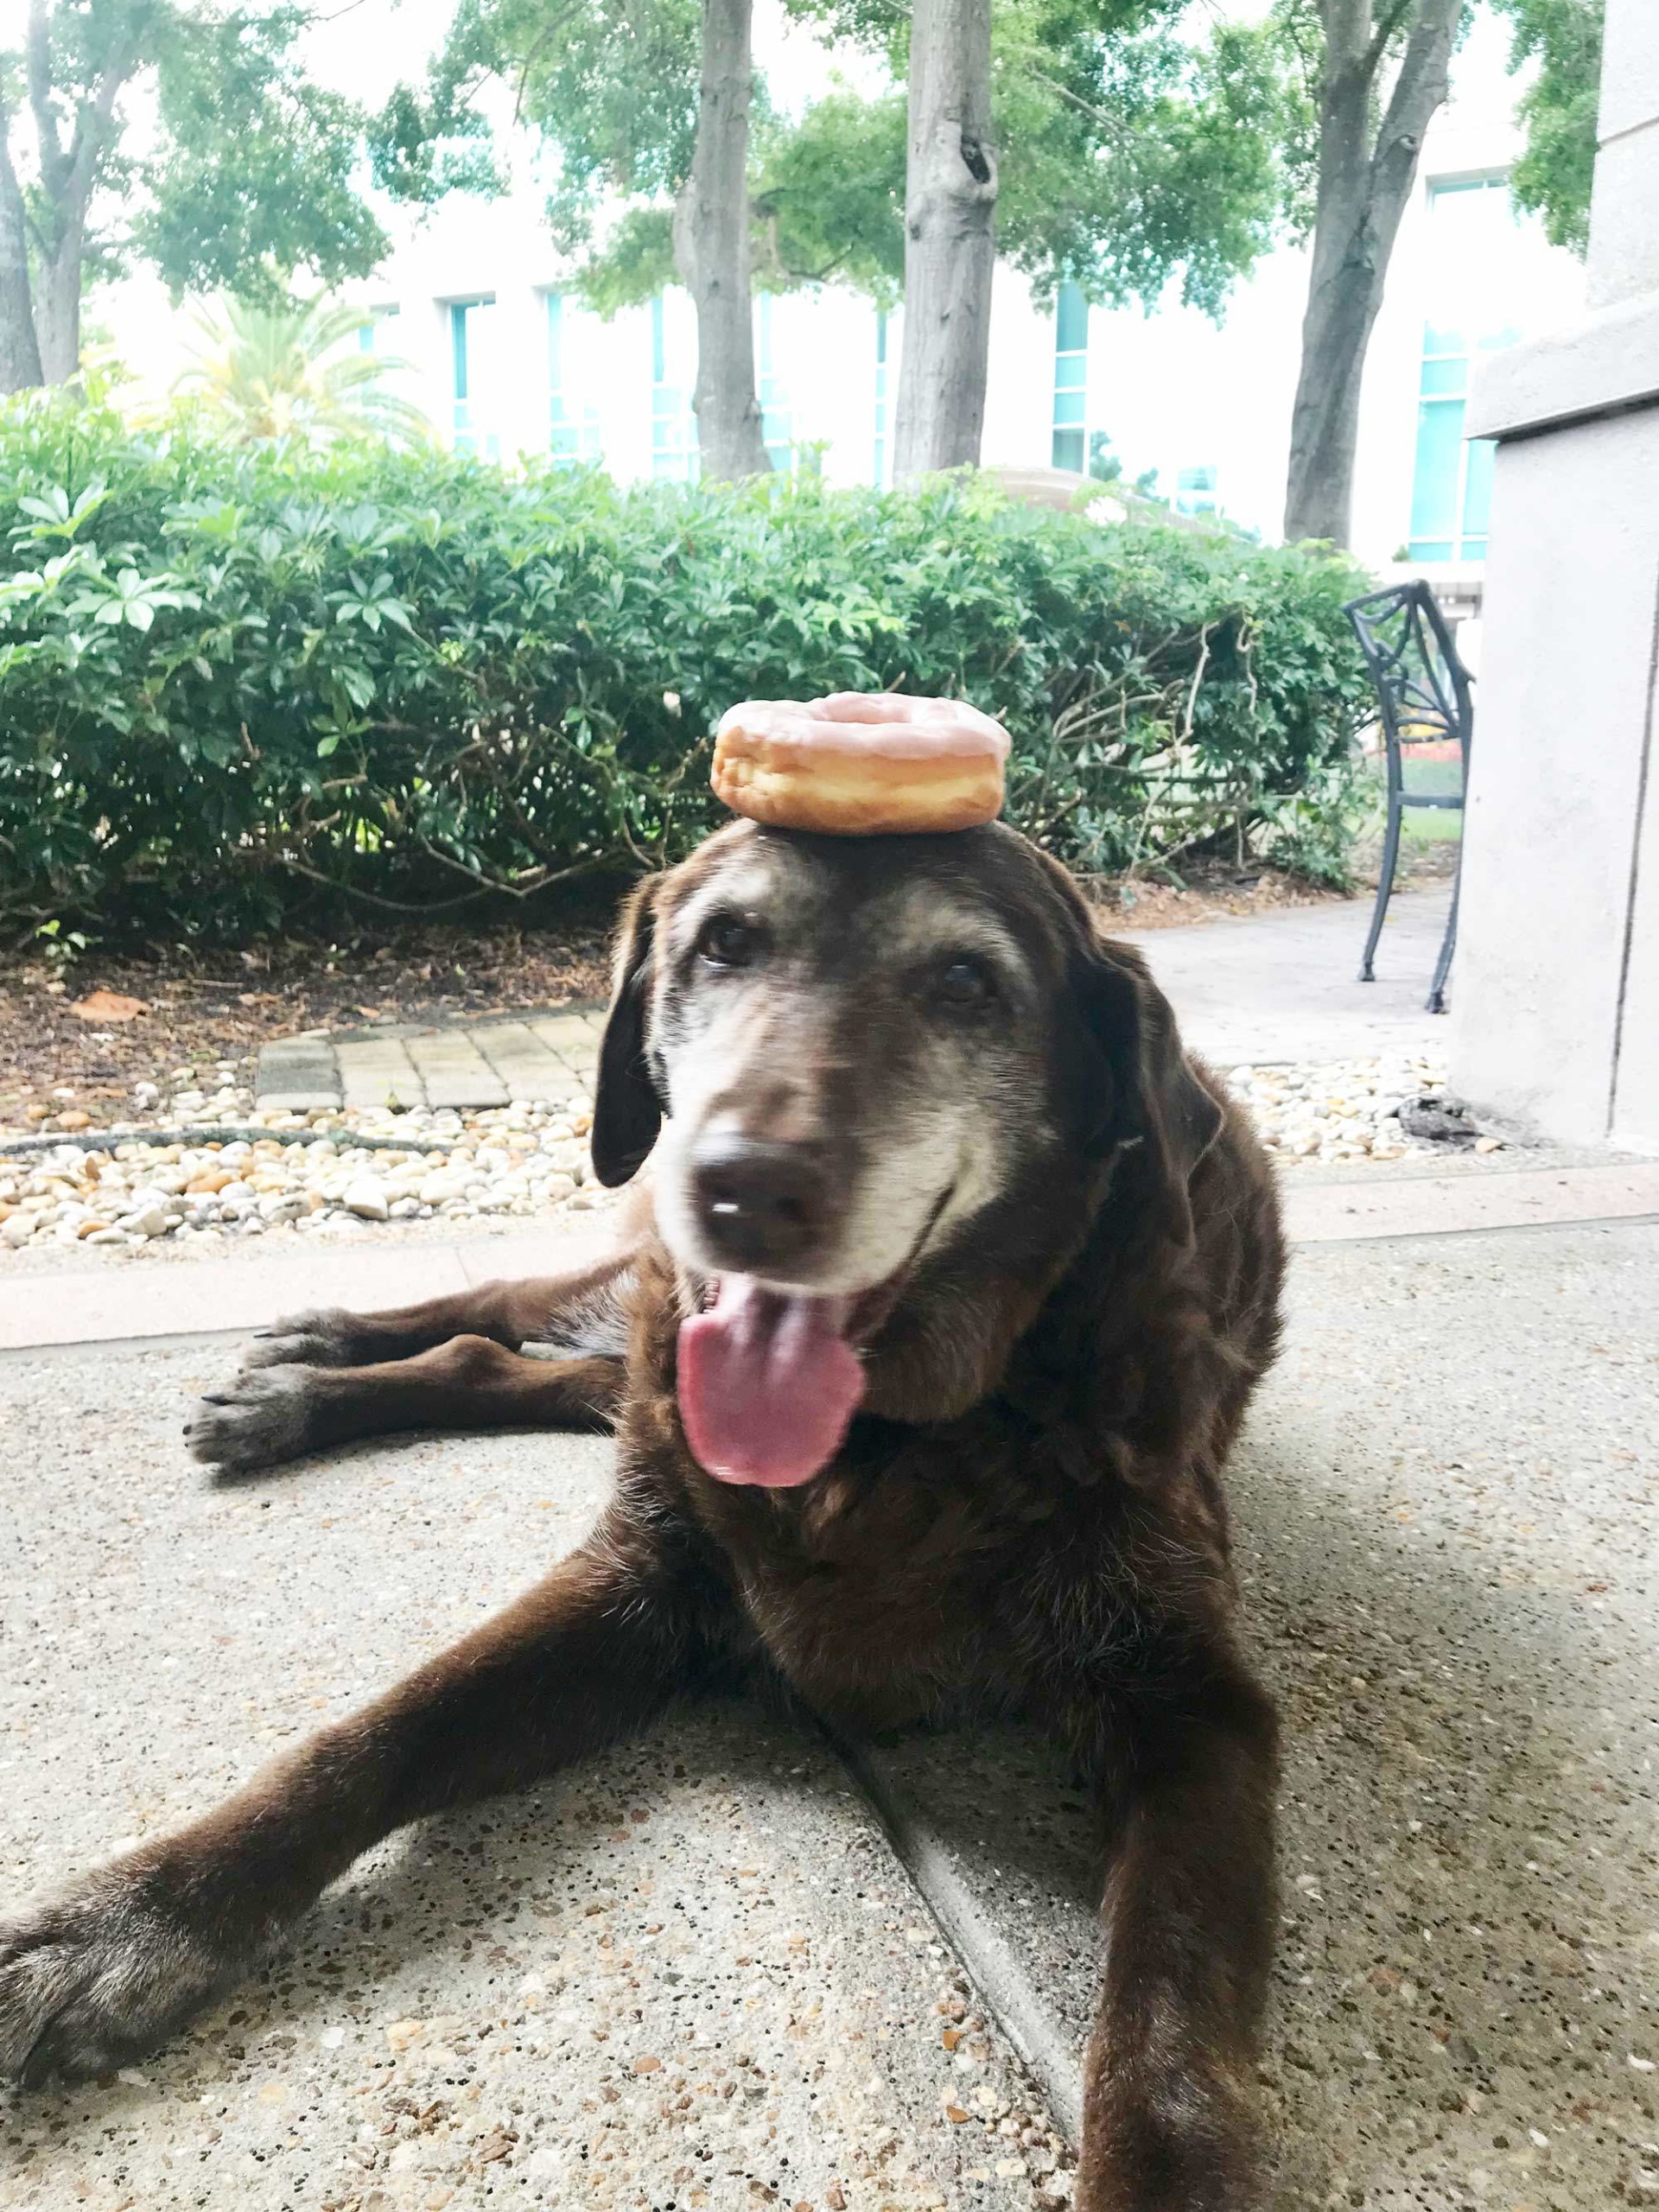 National Doughnut Day | Jaz with a doughnut on her head